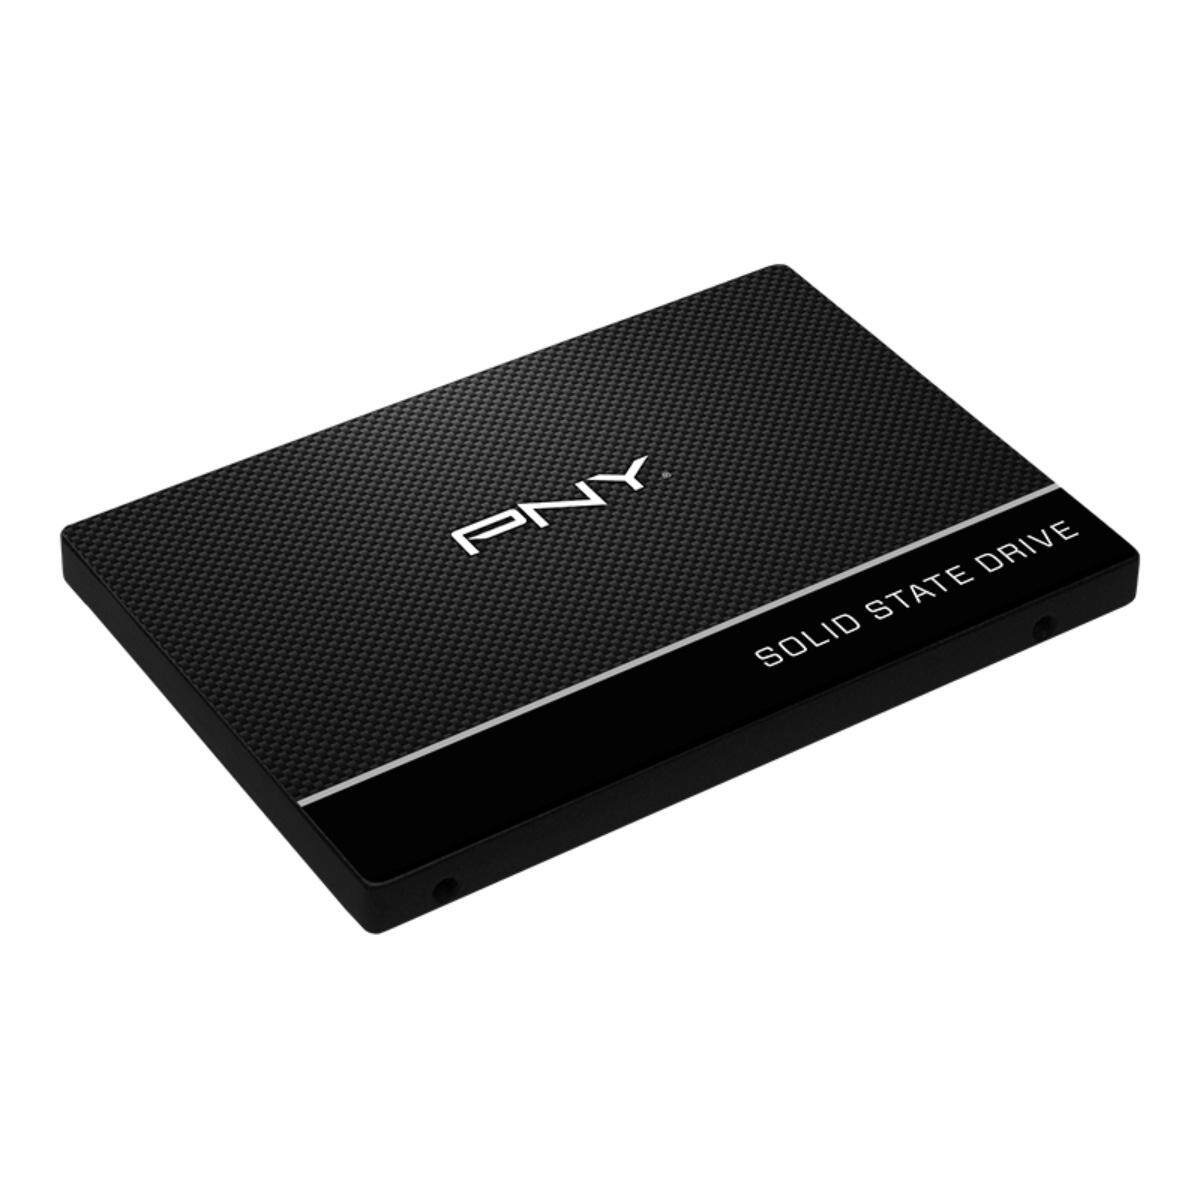 SSD PNY CS900 2.5" SATA 3 3D NAND SSD Solid State Drives 500GB (SSD7CS900-500-RB)